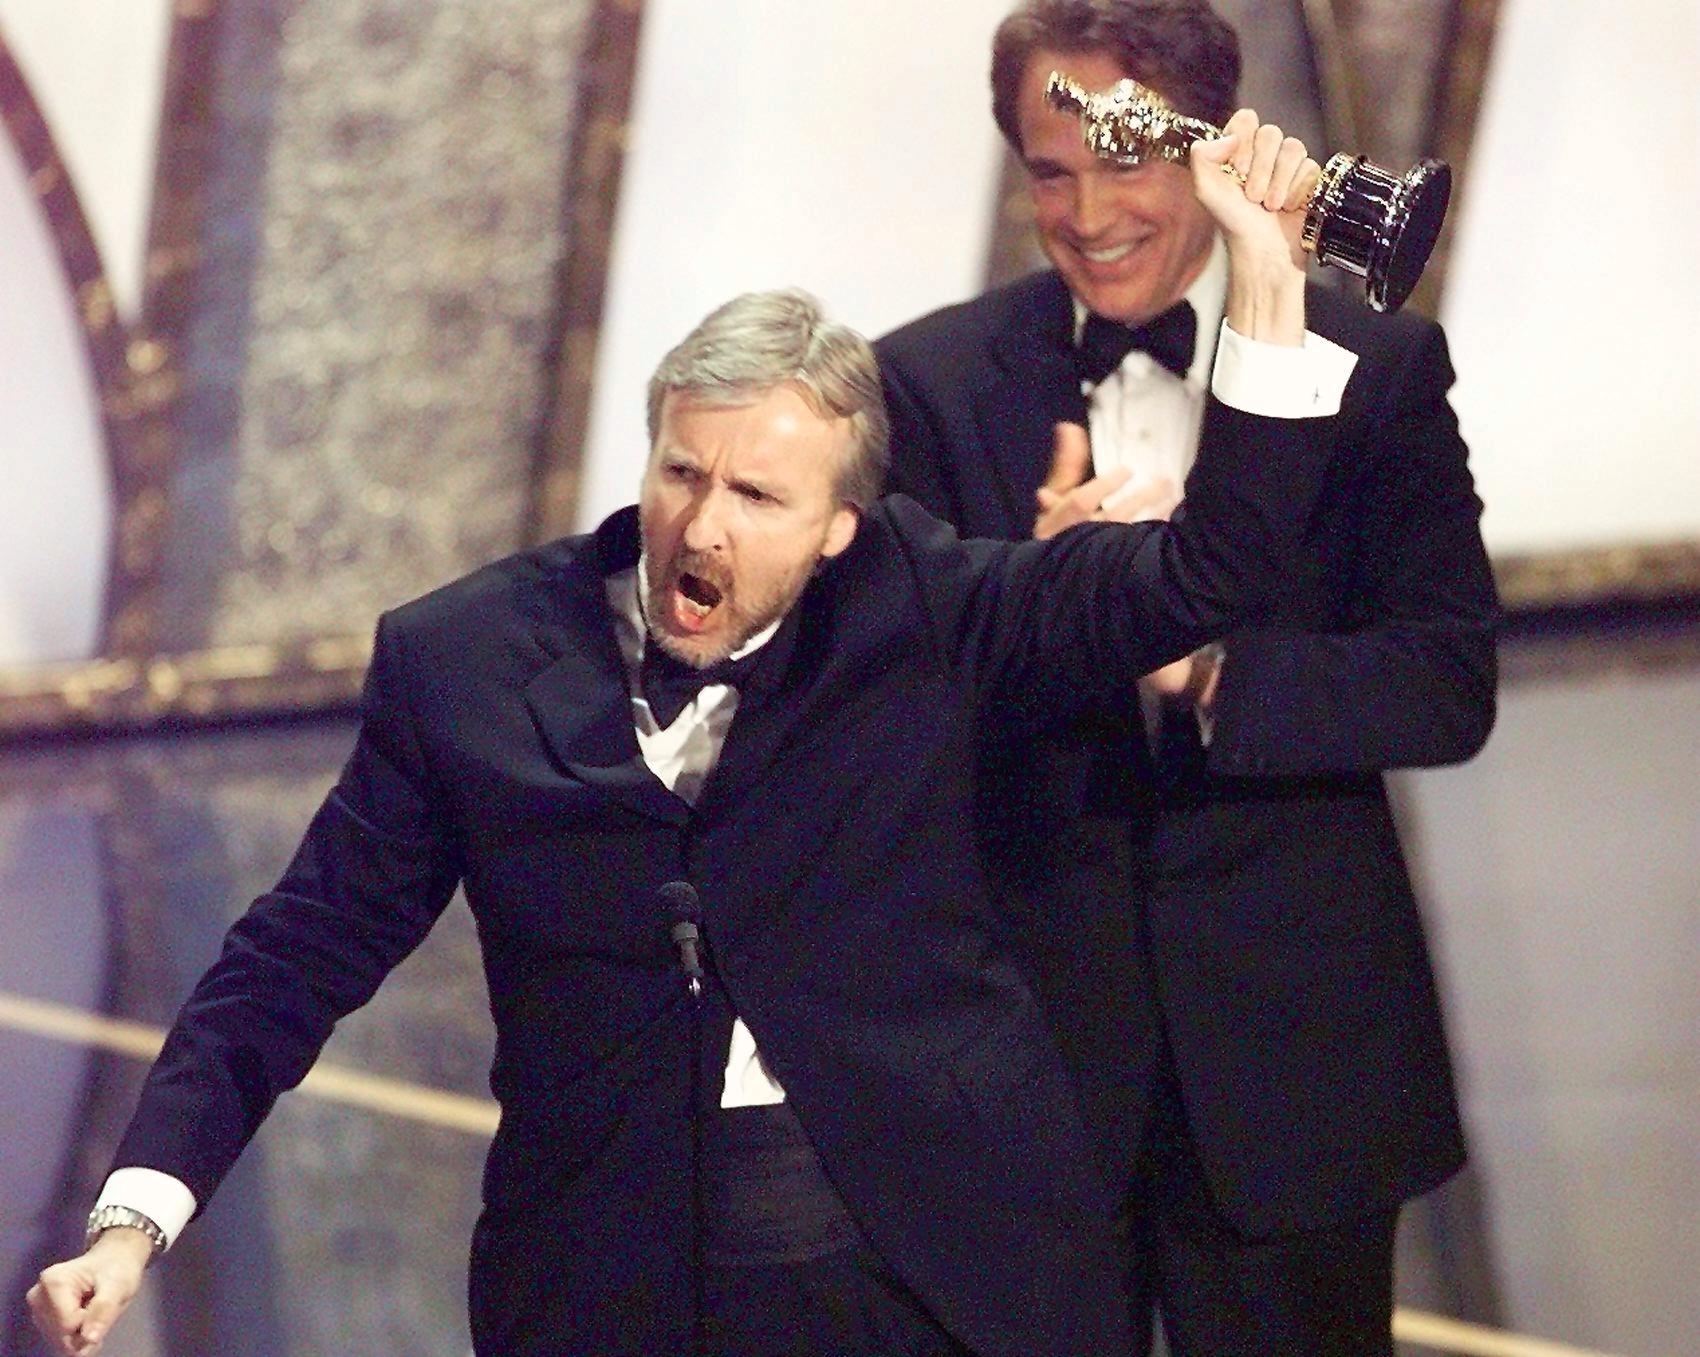 James Cameron winning the Oscar